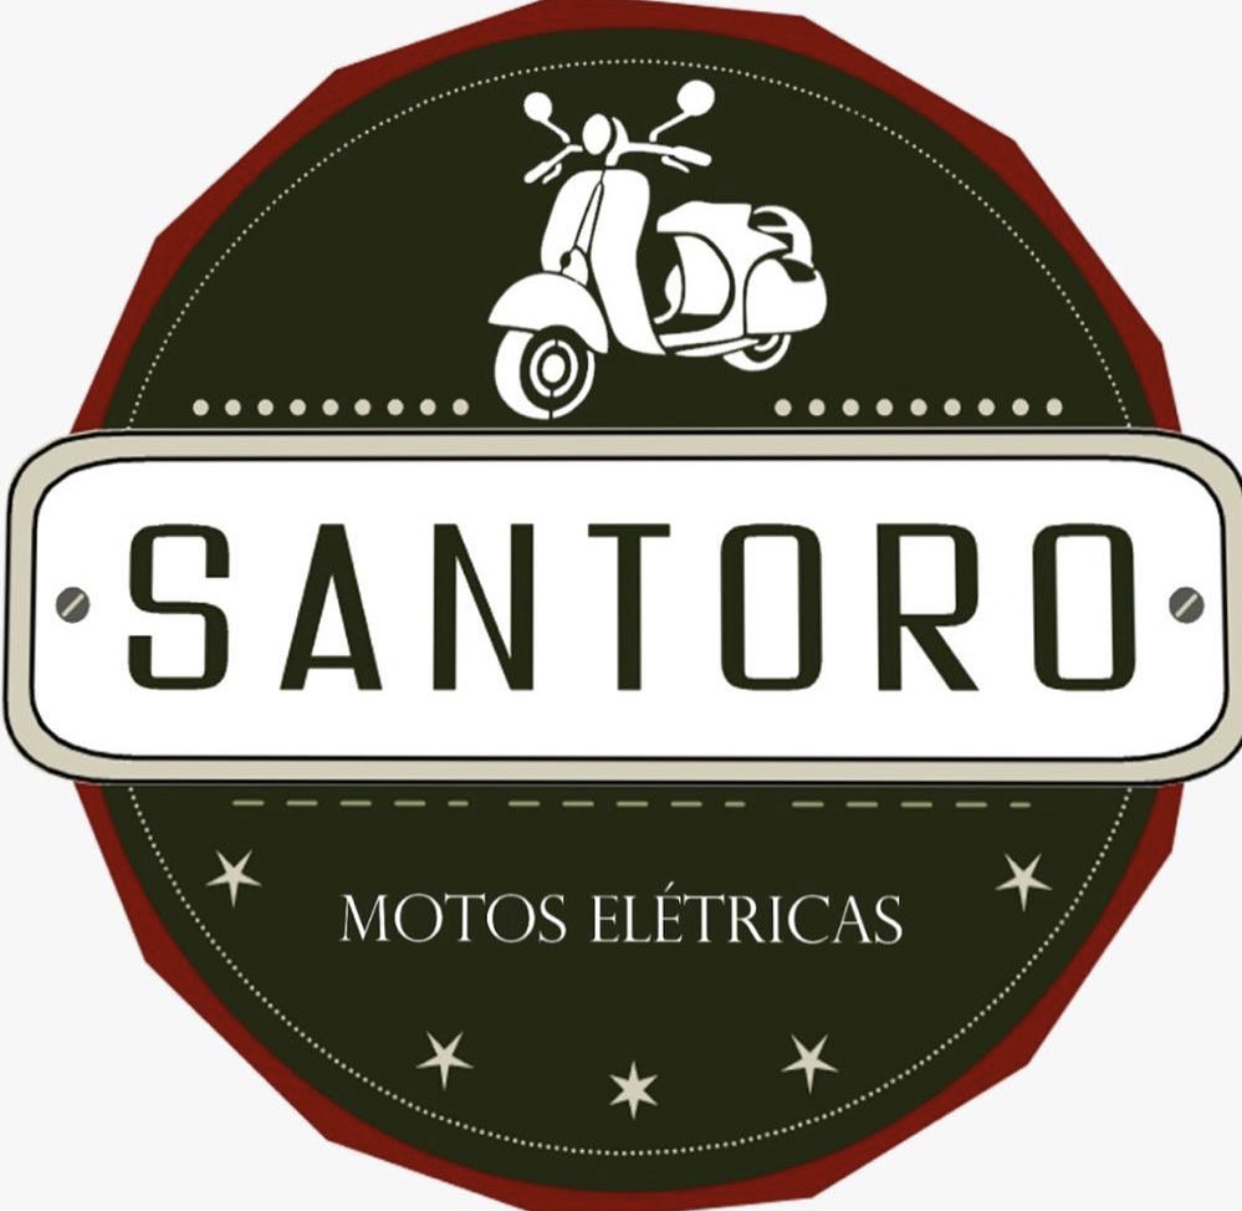 Santoro Motos